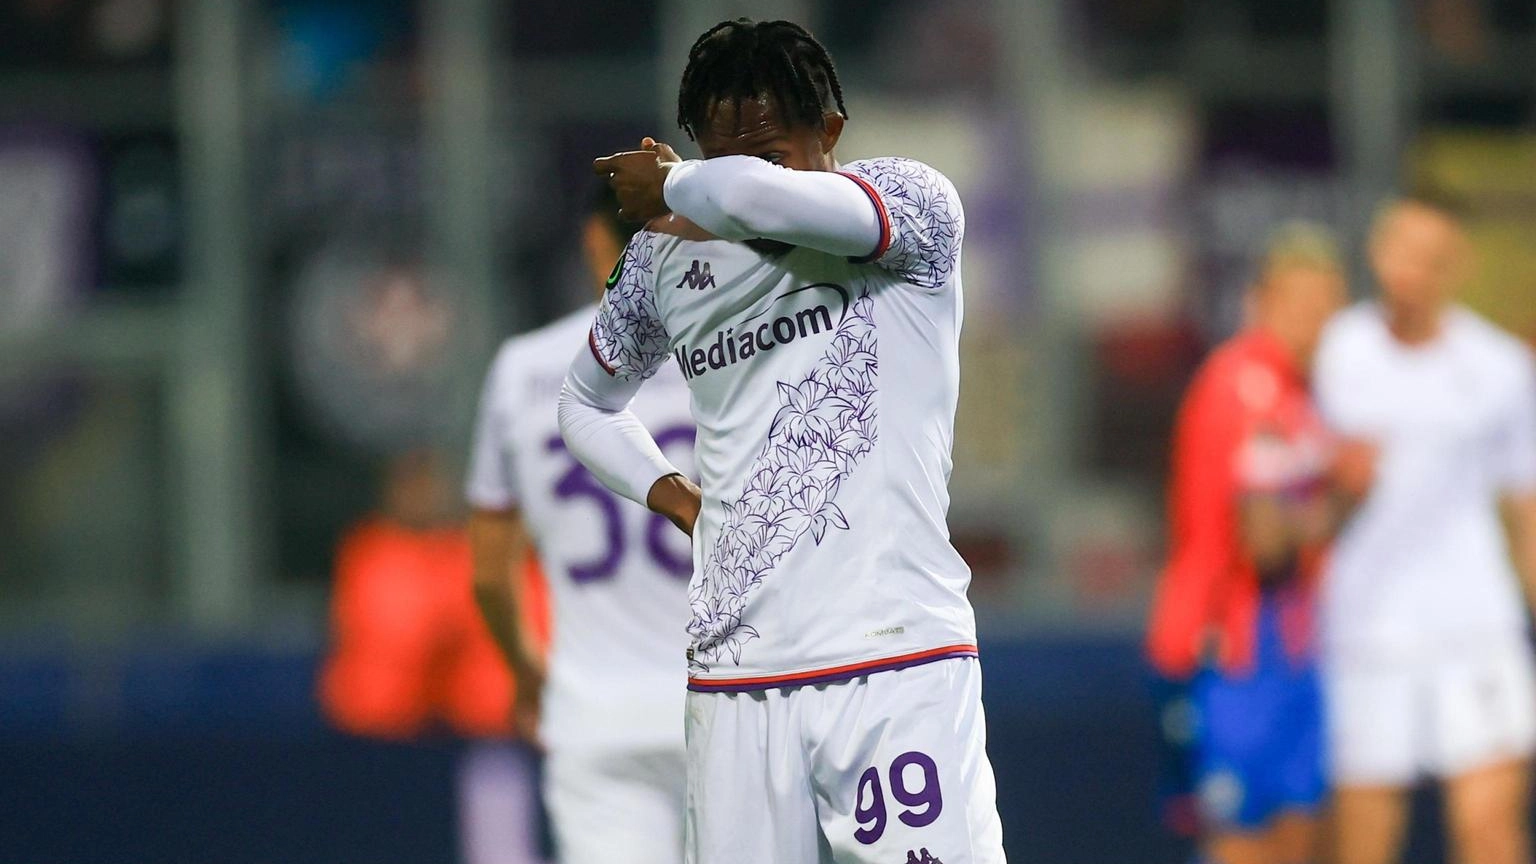 Calcio: amichevoli: Fiorentina sconfitta 2-1 contro il Preston